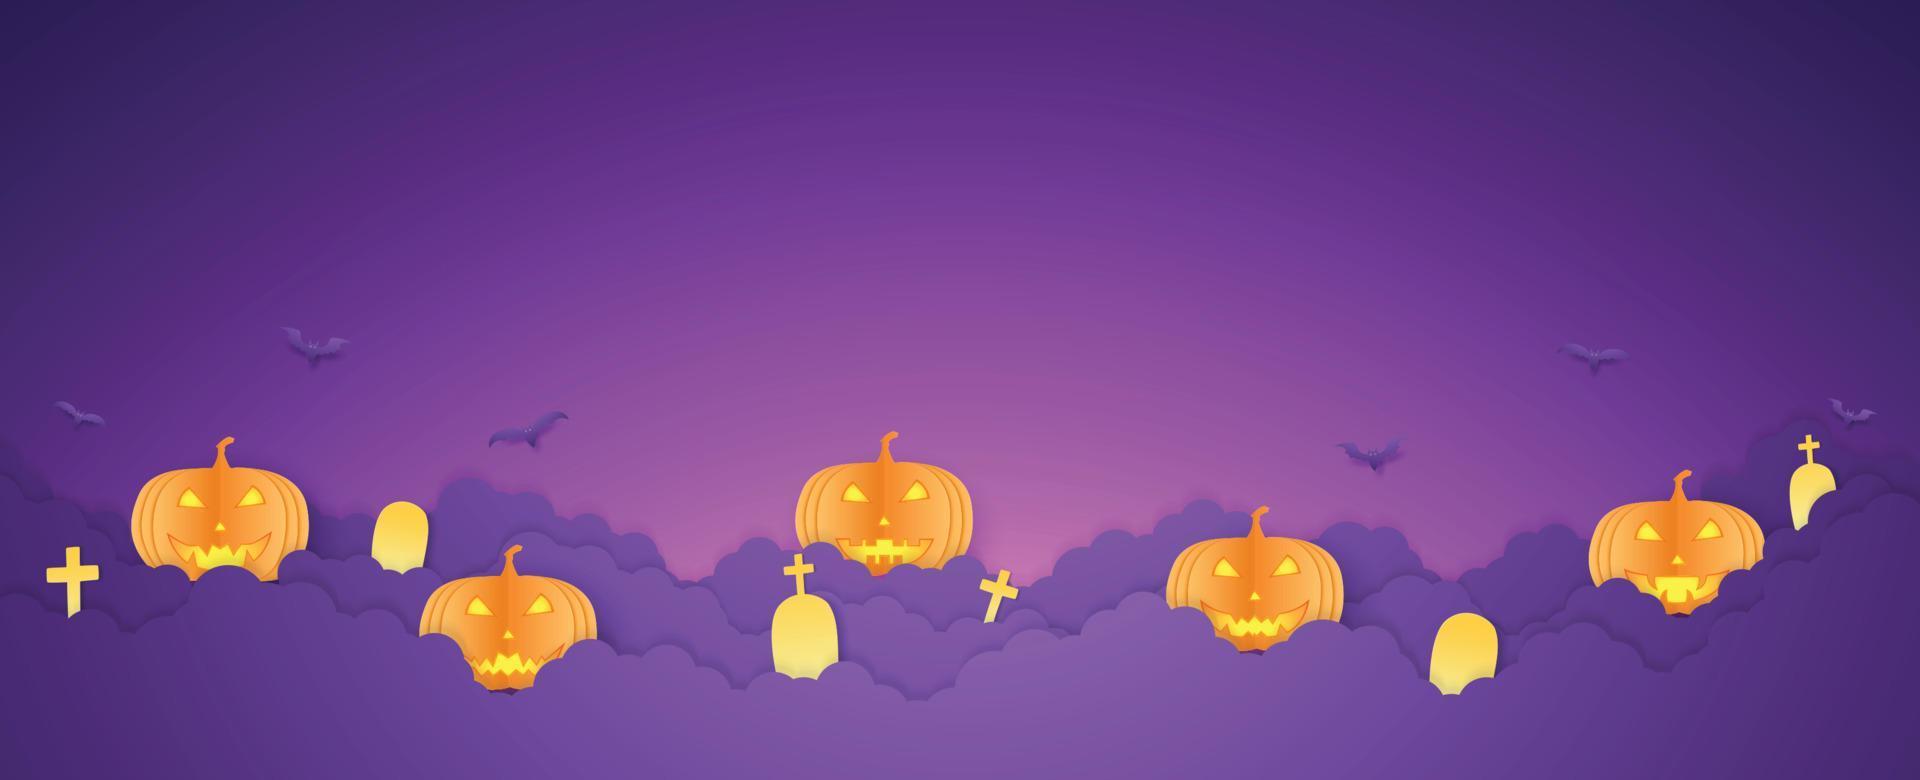 testa di zucca arancione di halloween, pipistrelli e cimitero su nuvola, copia spazio, stile di arte della carta vettore